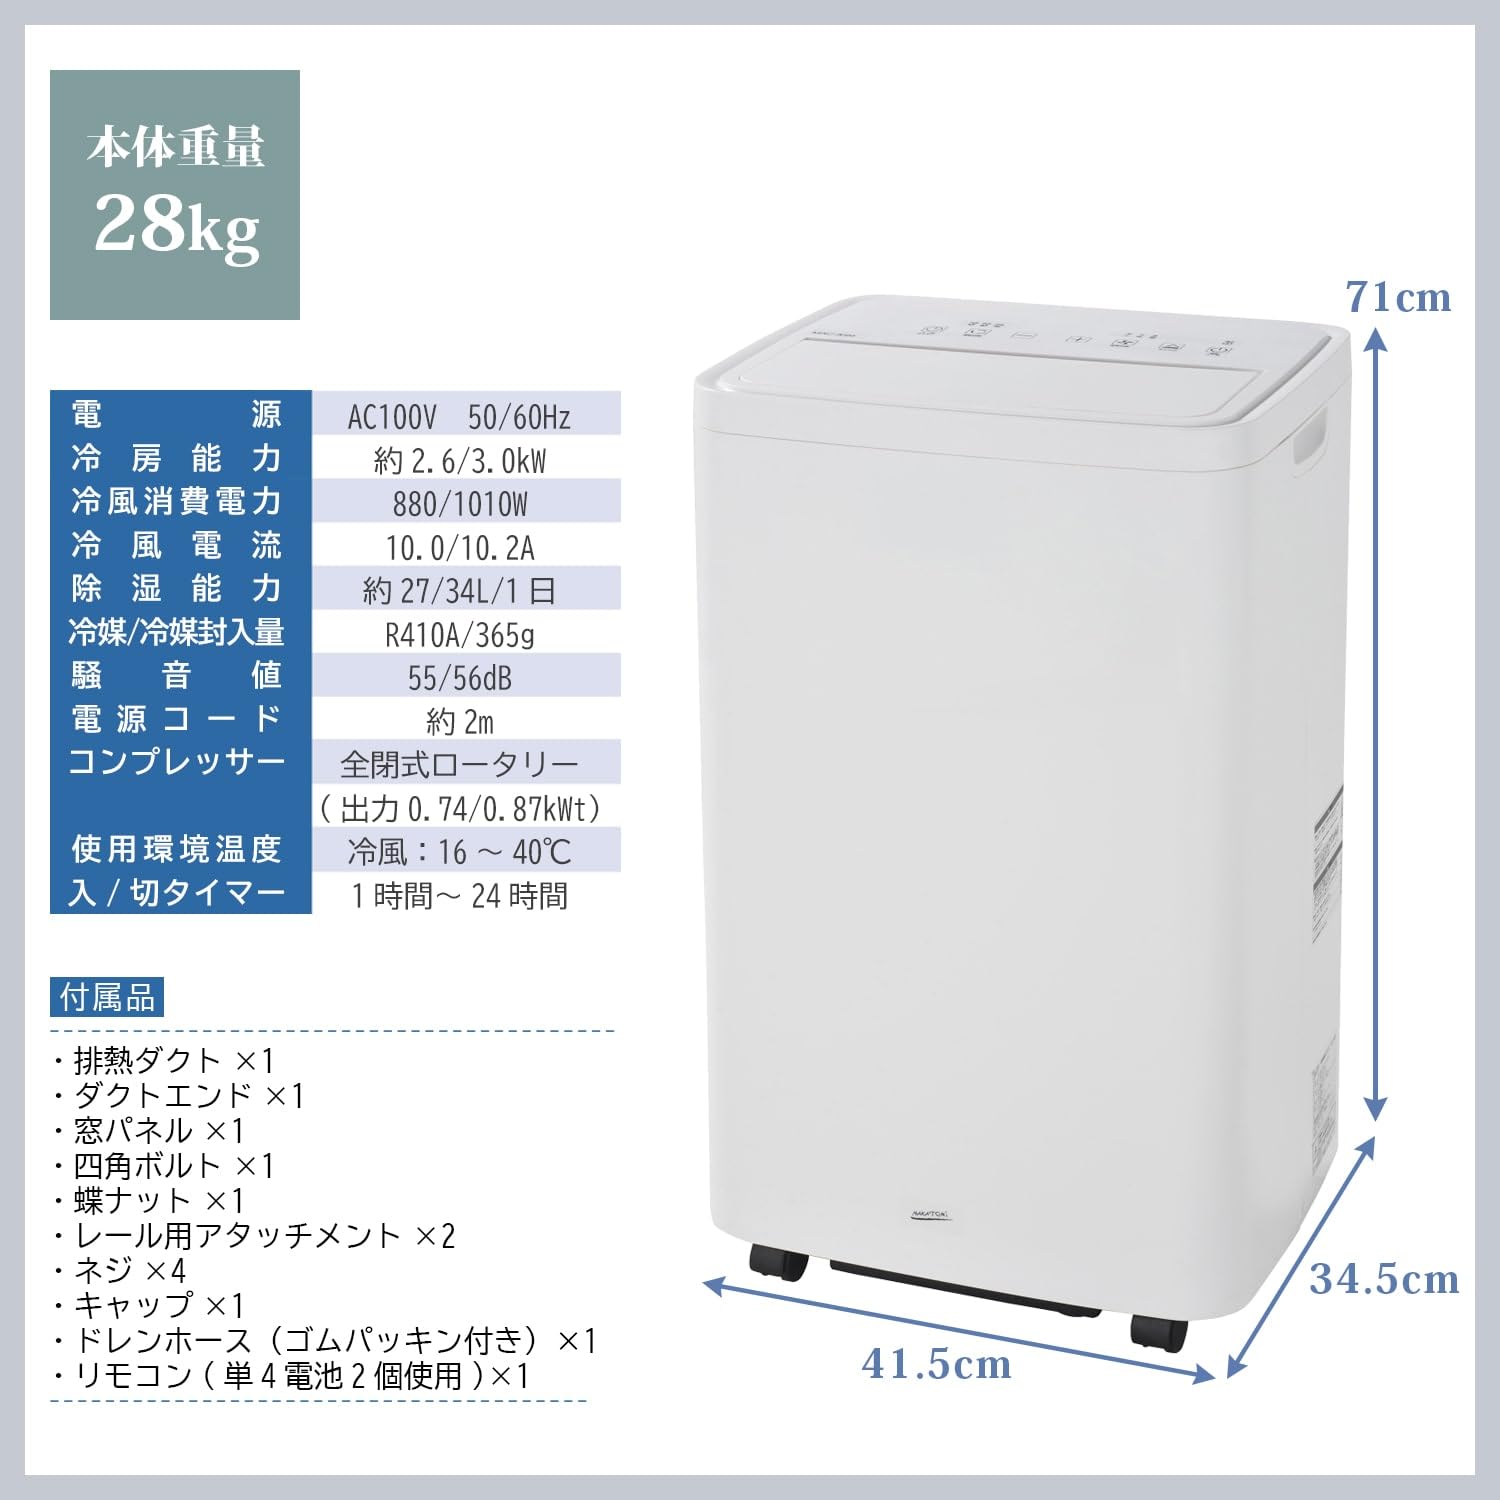 【10％オフクーポン対象】大型移動式エアコン MAC-3026 ナカトミ NAKATOMI